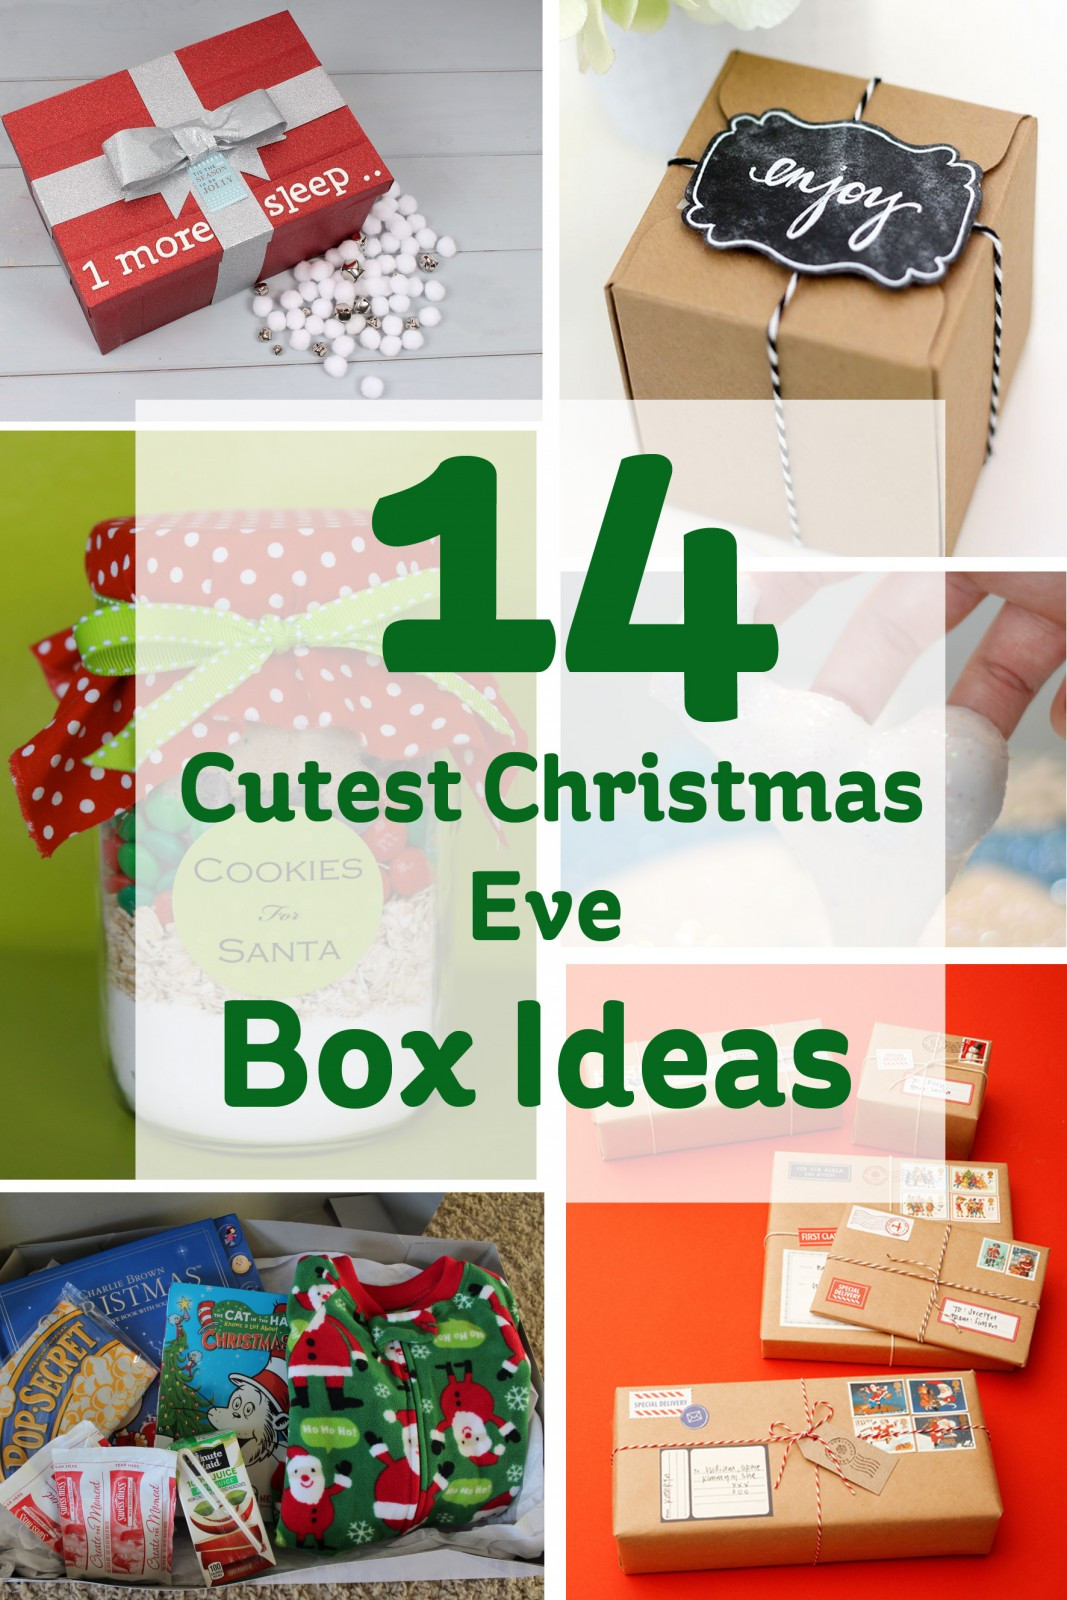 Christmas Gift Box Ideas
 The 14 Cutest Christmas Eve Box Ideas Hobbycraft Blog